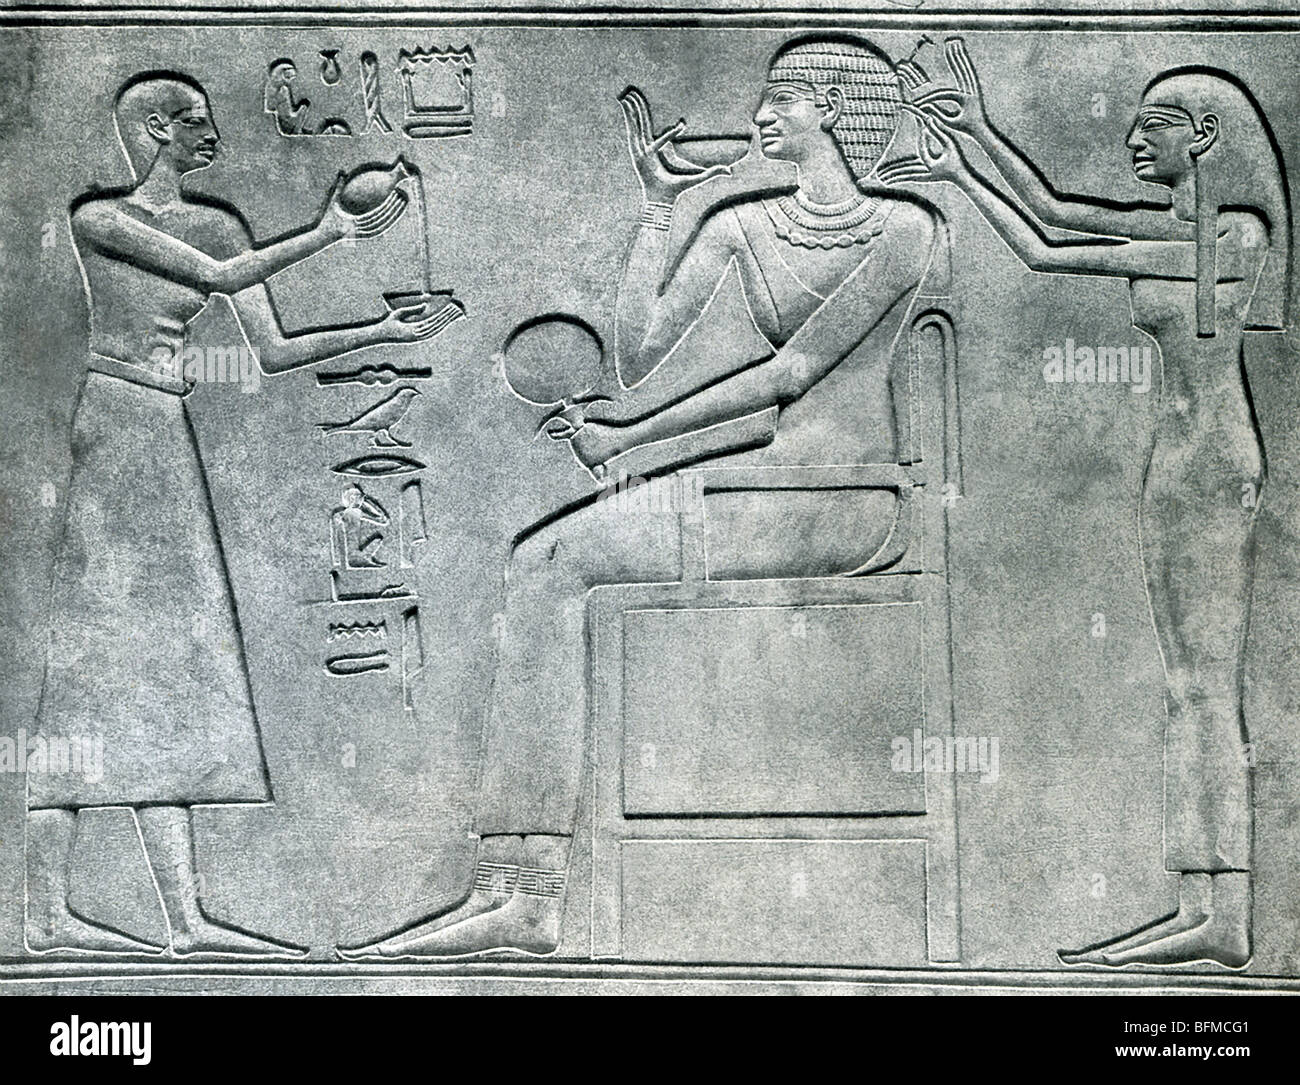 La princesse égyptienne Kawit est assis , une femme de 11ème dynastie- Mentuhotep II. Un serviteur organise ses cheveux, une autre offre son vin Banque D'Images